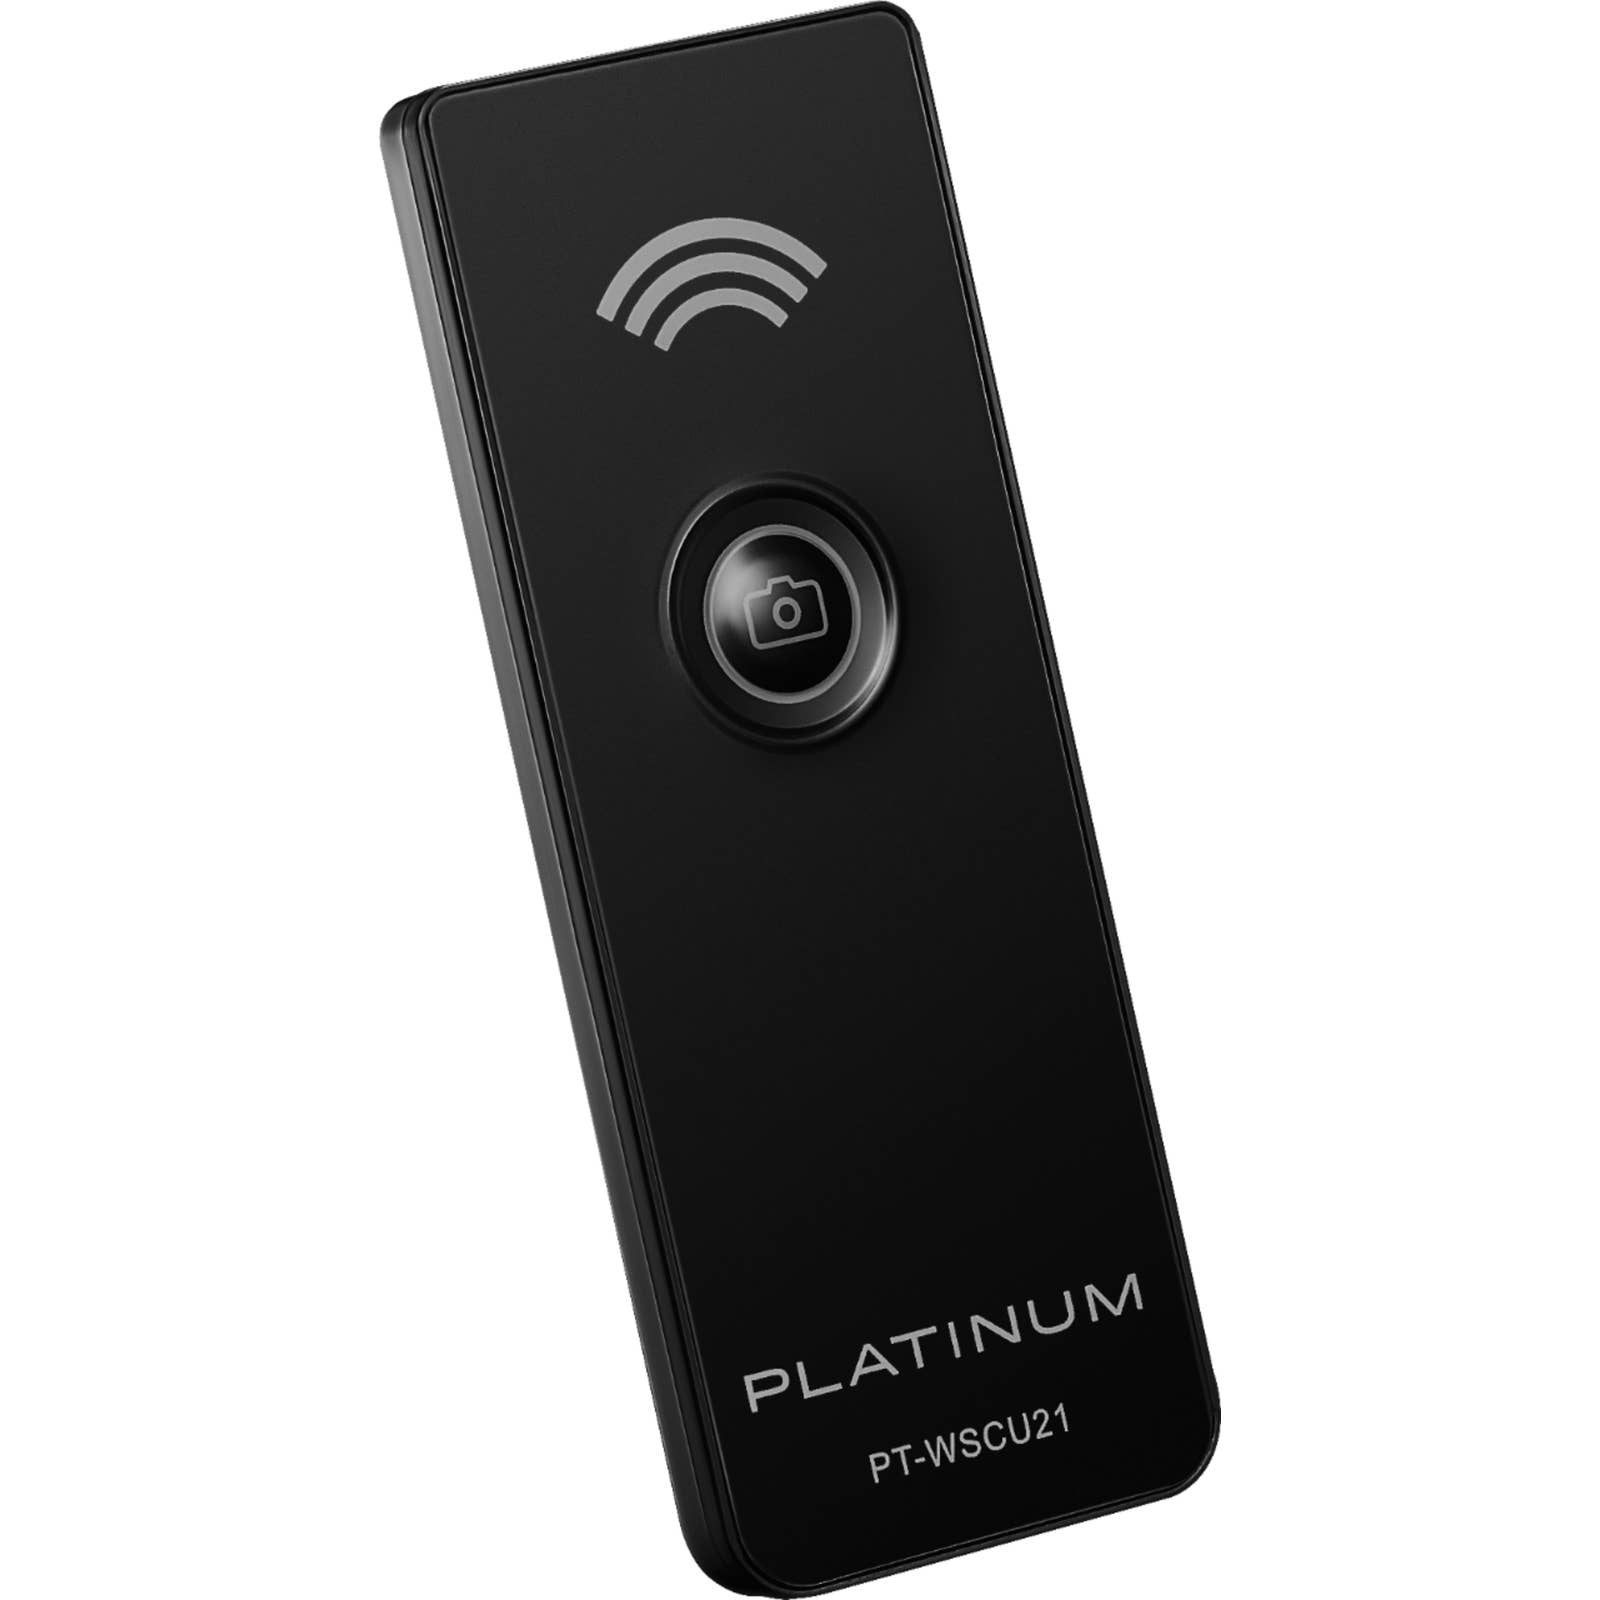 Platinum™ - PT-CRSA1 UHS-I USB 3.2 Gen 1 Memory Card Reader - Black -  Upscaled